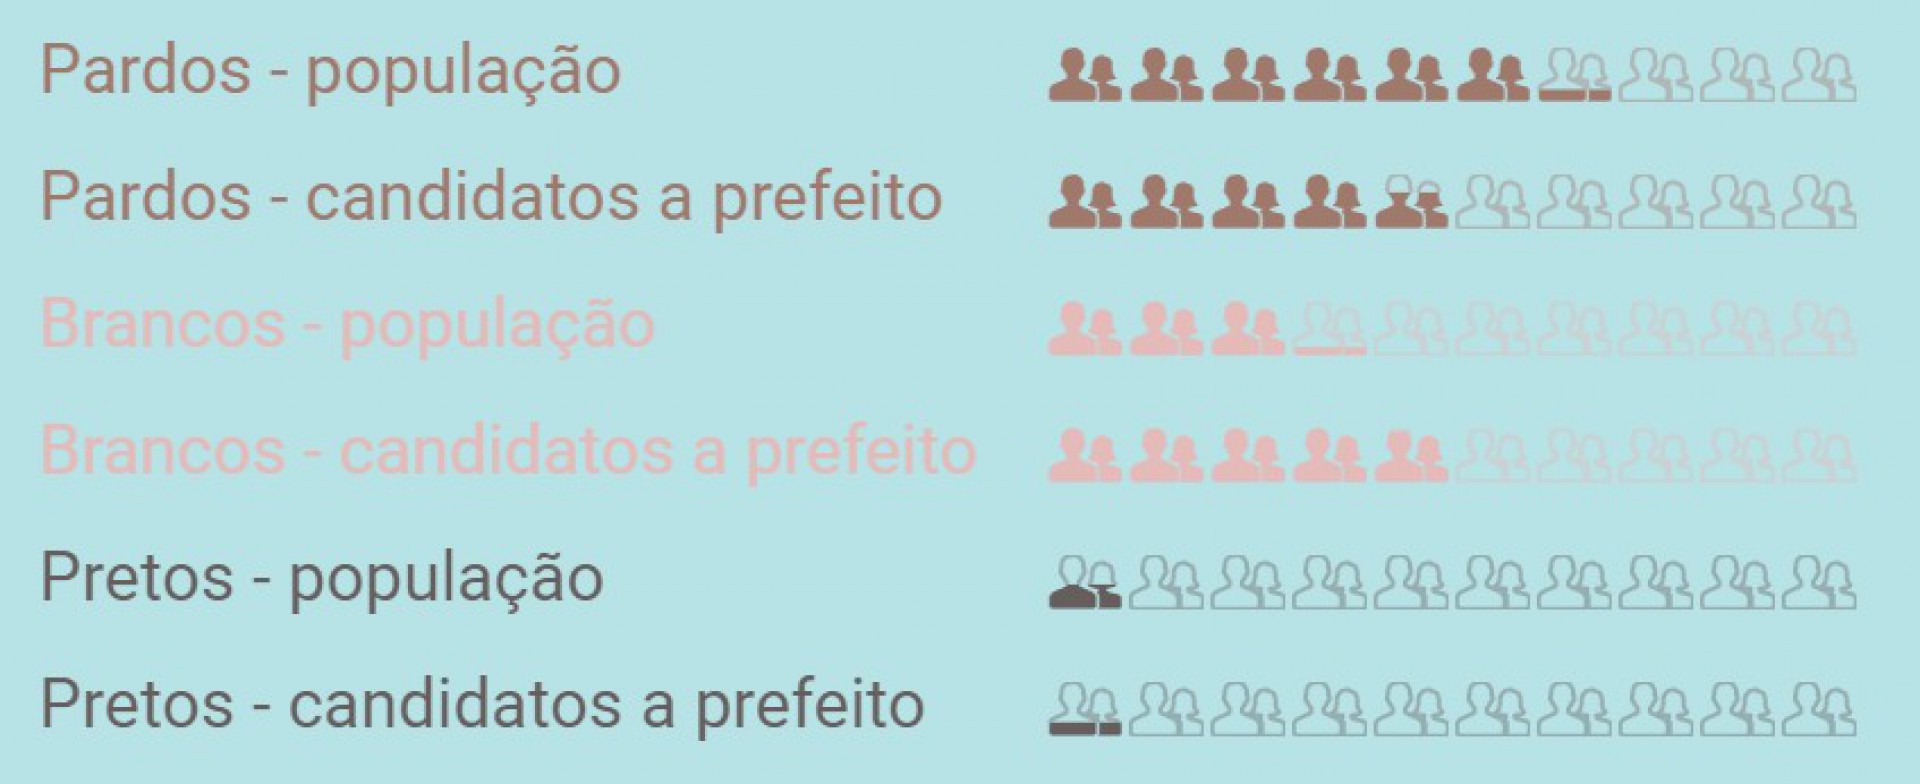 Proporção de cor/etnia na população cearense (Censo IBGE 2010) e nos candidatos a prefeito no Ceará nas eleições 2020